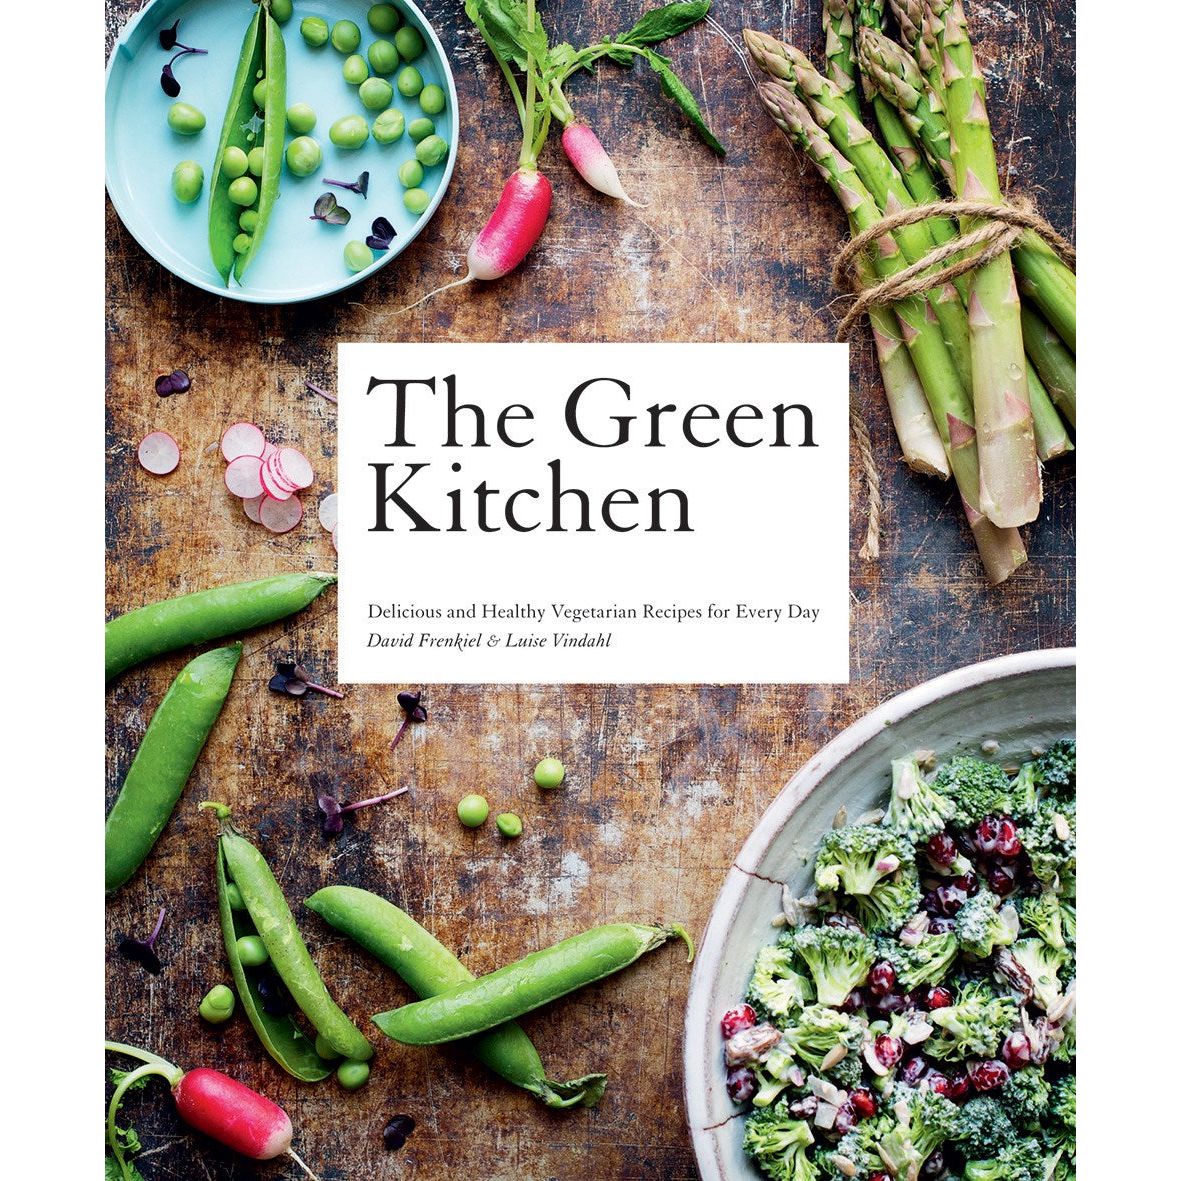 The Green Kitchen (David Frenkiel & Luise Vindahl)